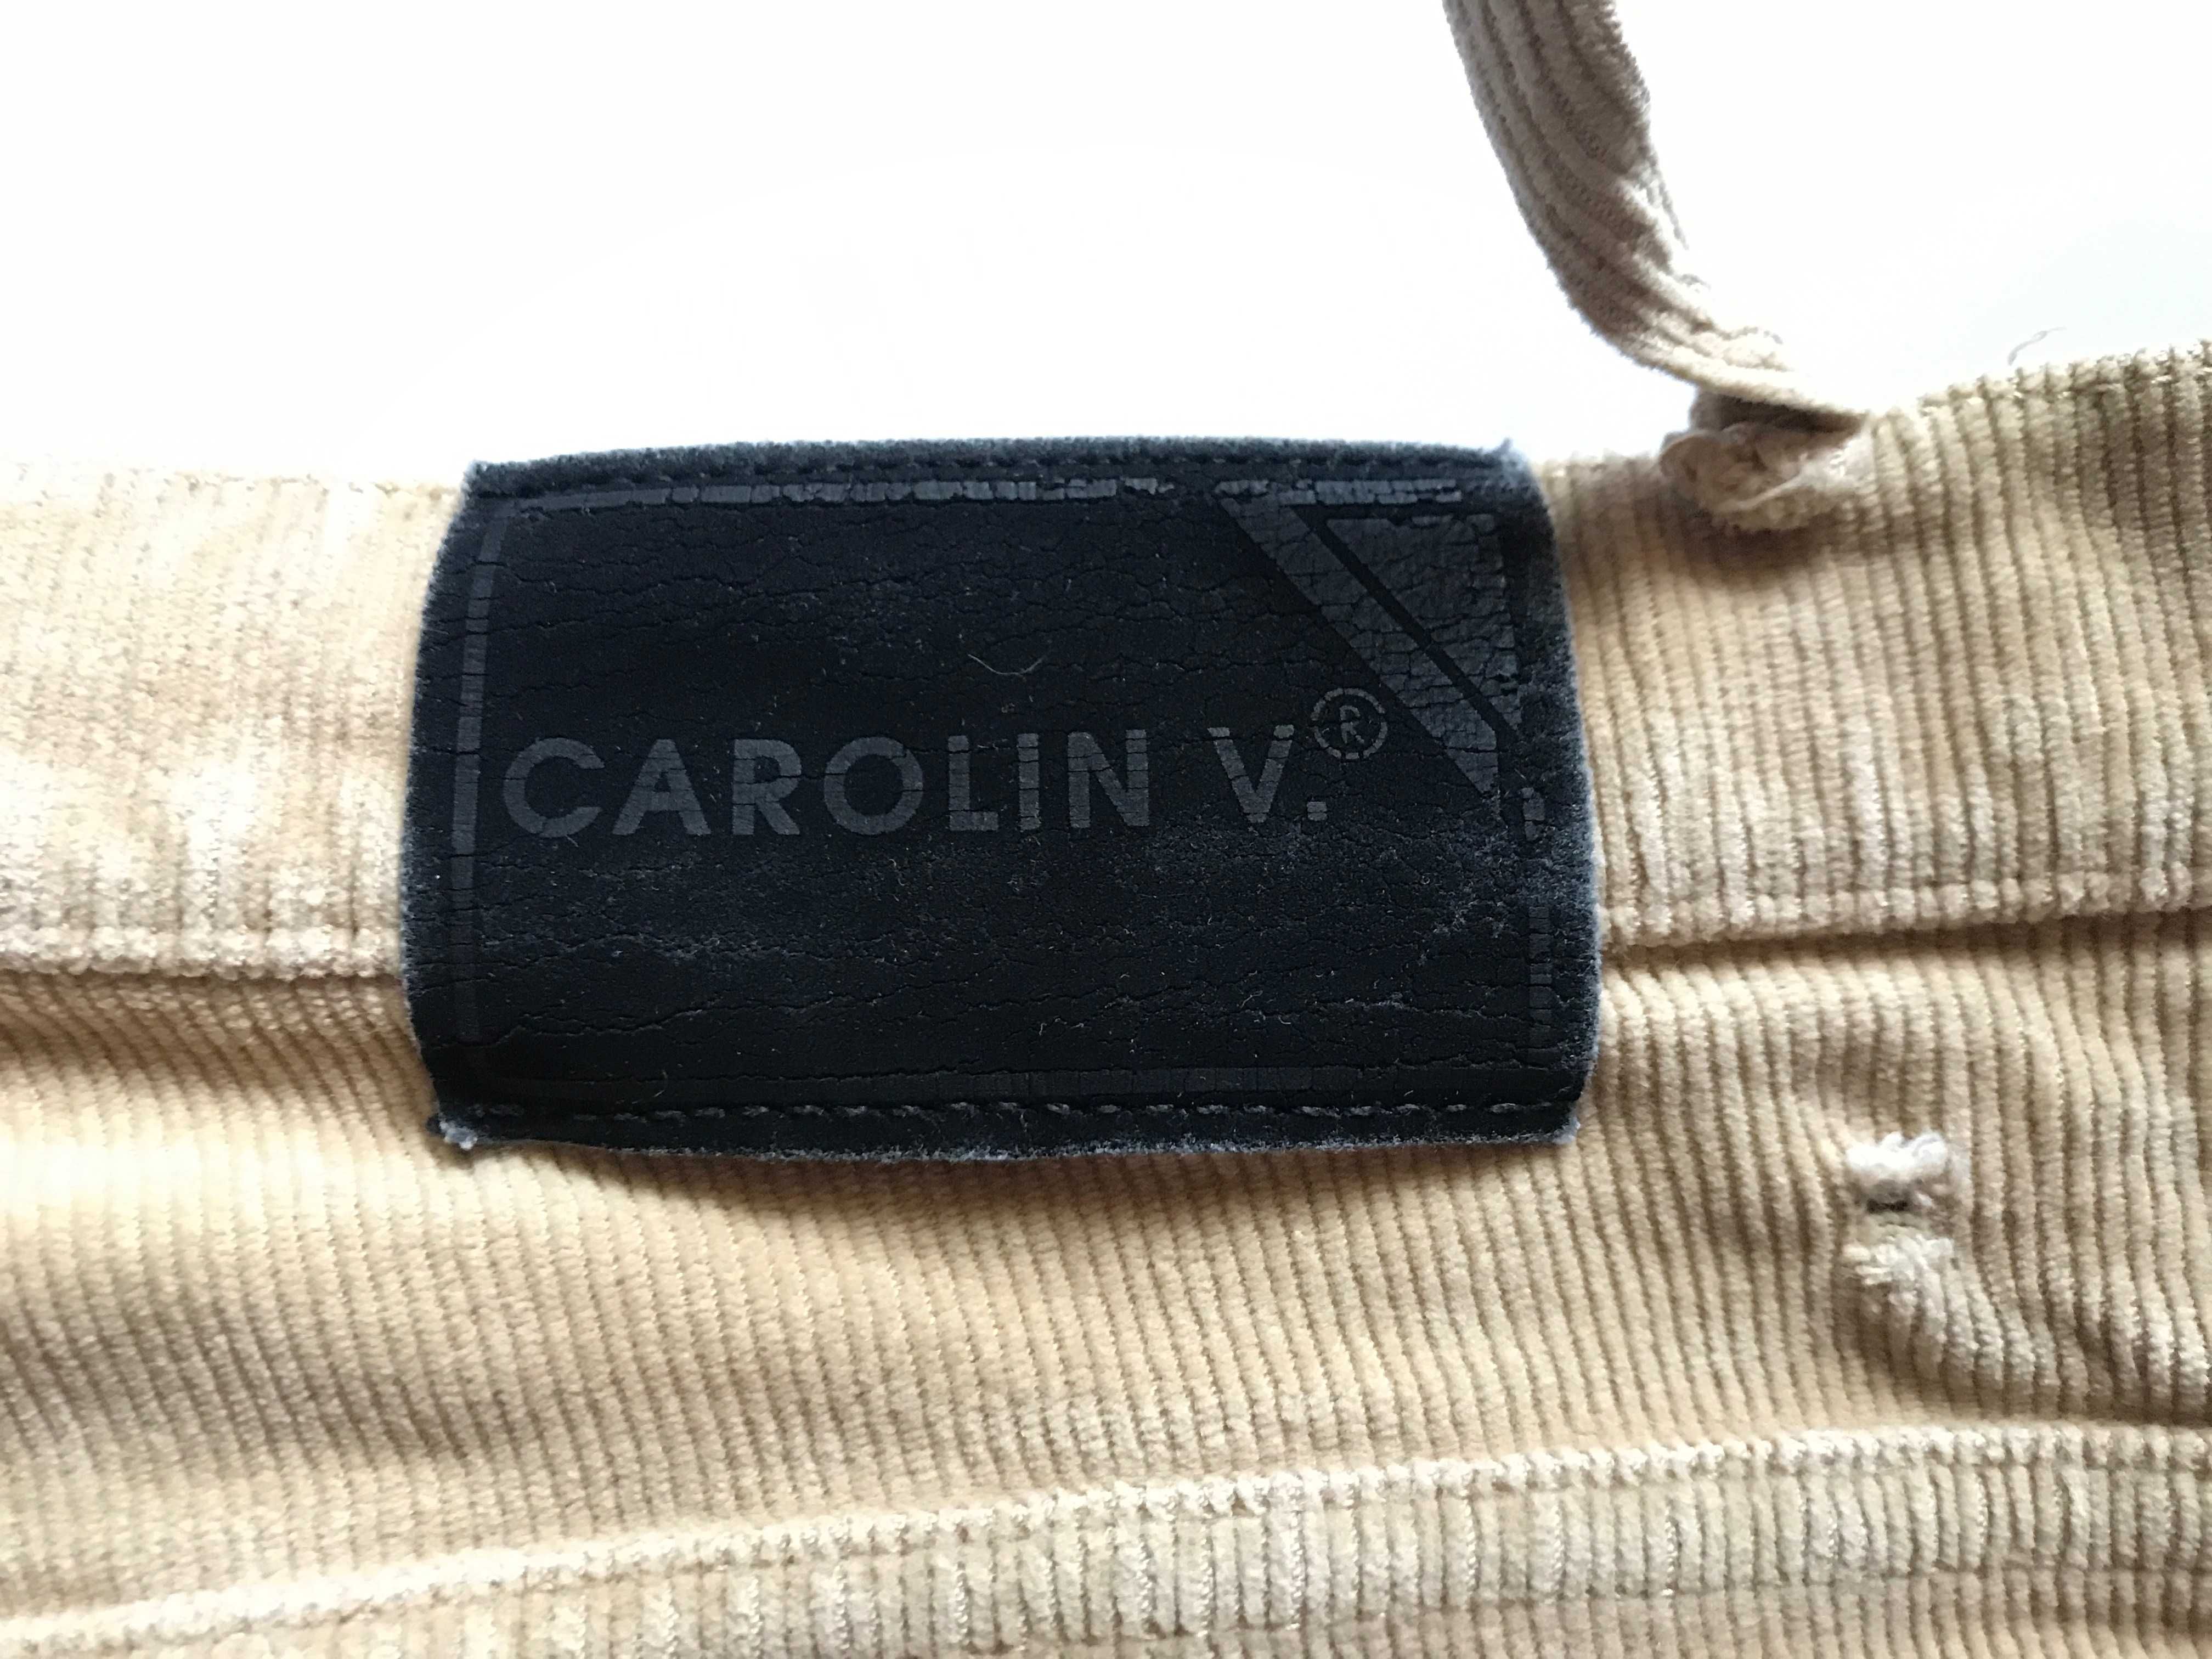 Вельветовые джинсы в клеш Carolin V. (42 размер)